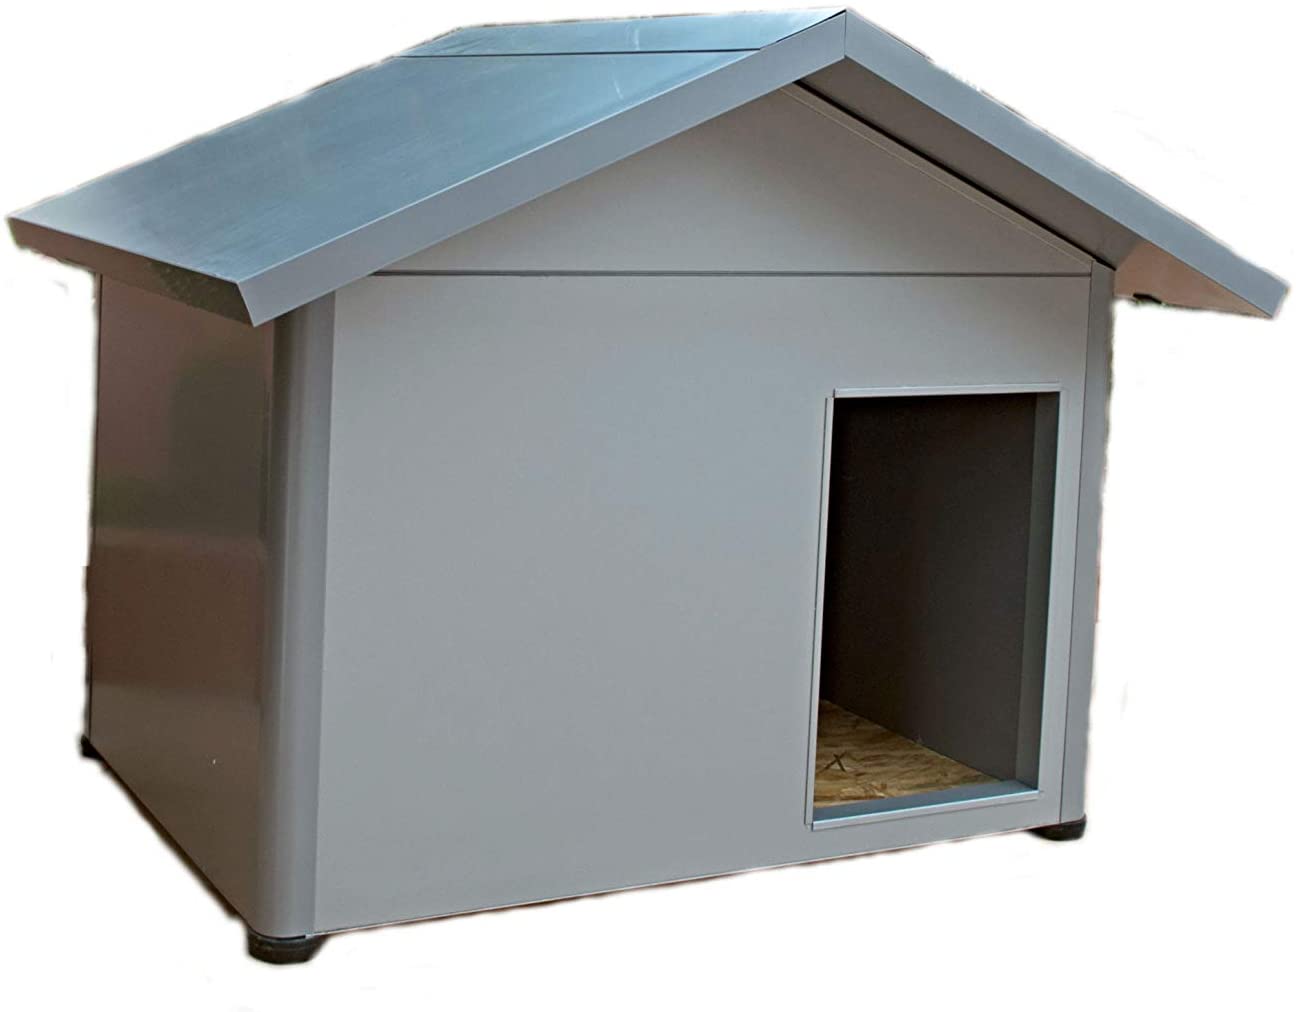  Thermoestank Caseta para Perro con Aislamiento Térmico Gris Metalizado Tamaño Mediano 